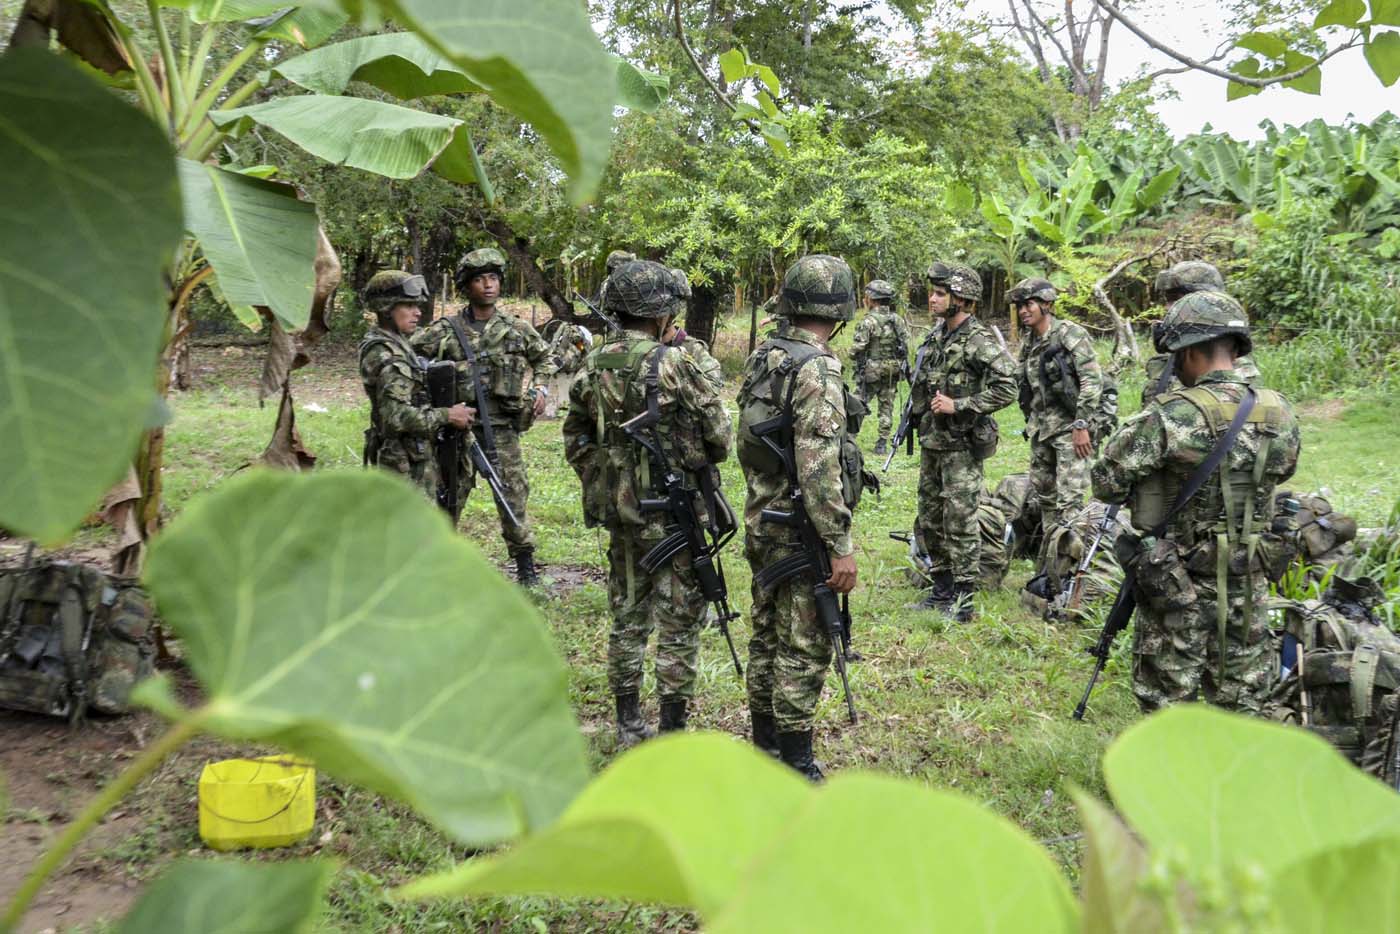 Ordenan acuartelamiento a fuerzas militares de Colombia #27Sep (Documento)